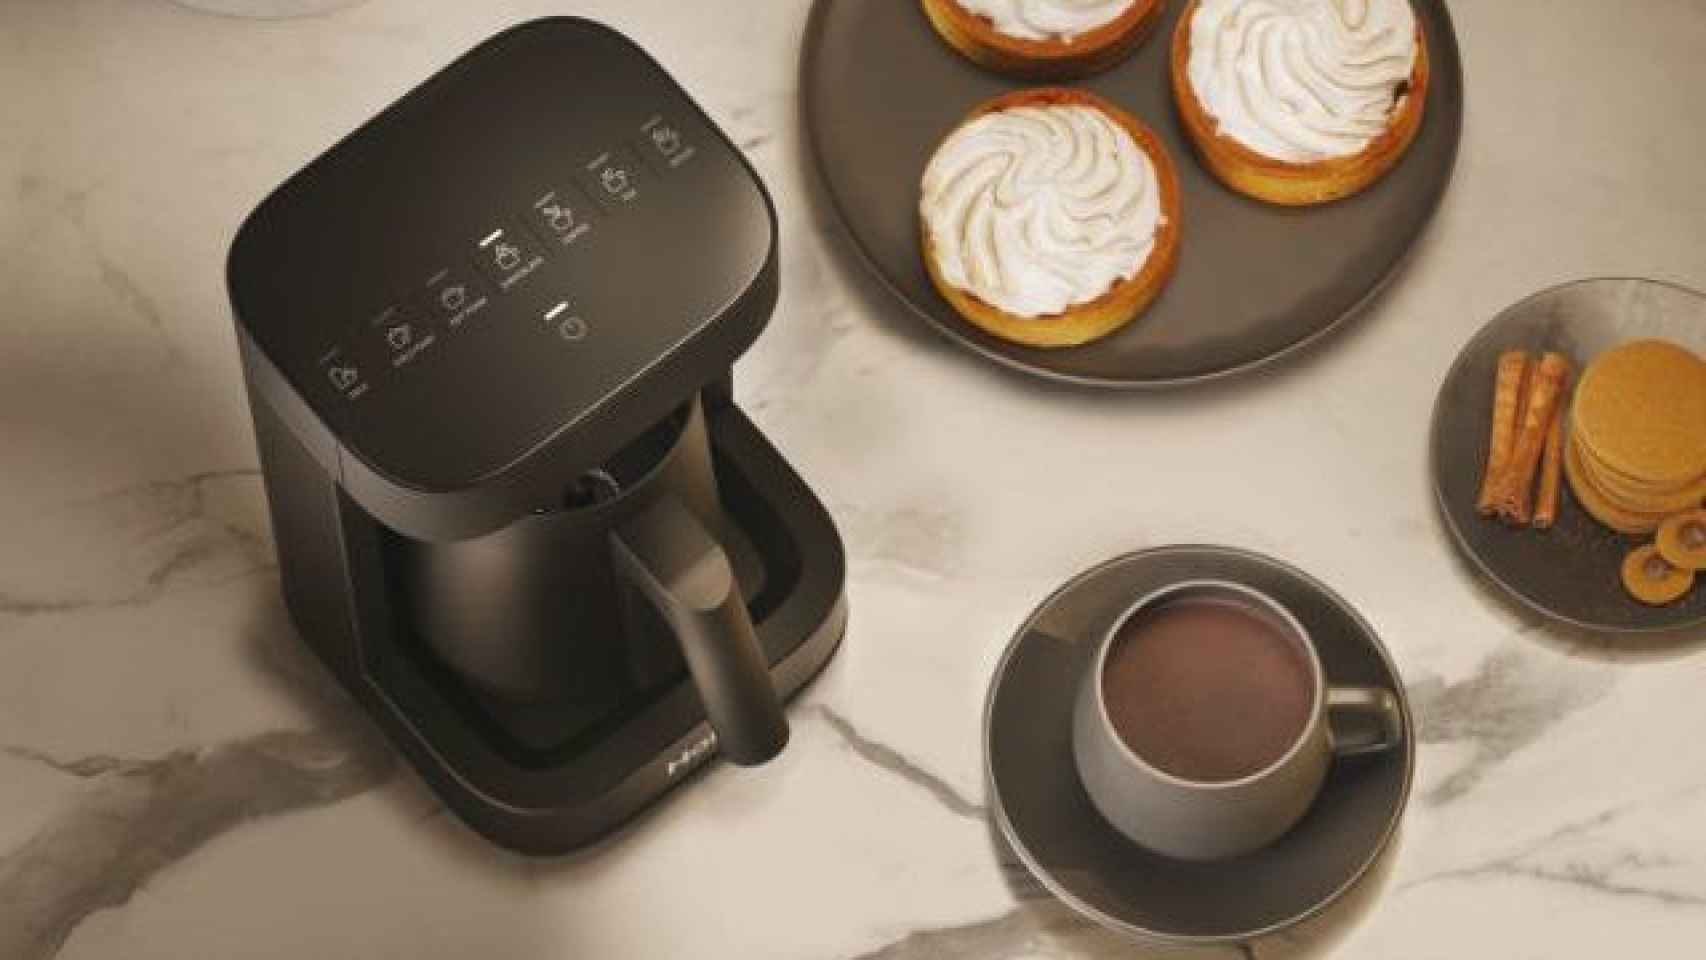 Despídete de las cápsulas Nespresso con esta cafetera compacta para hacer  café como un barista